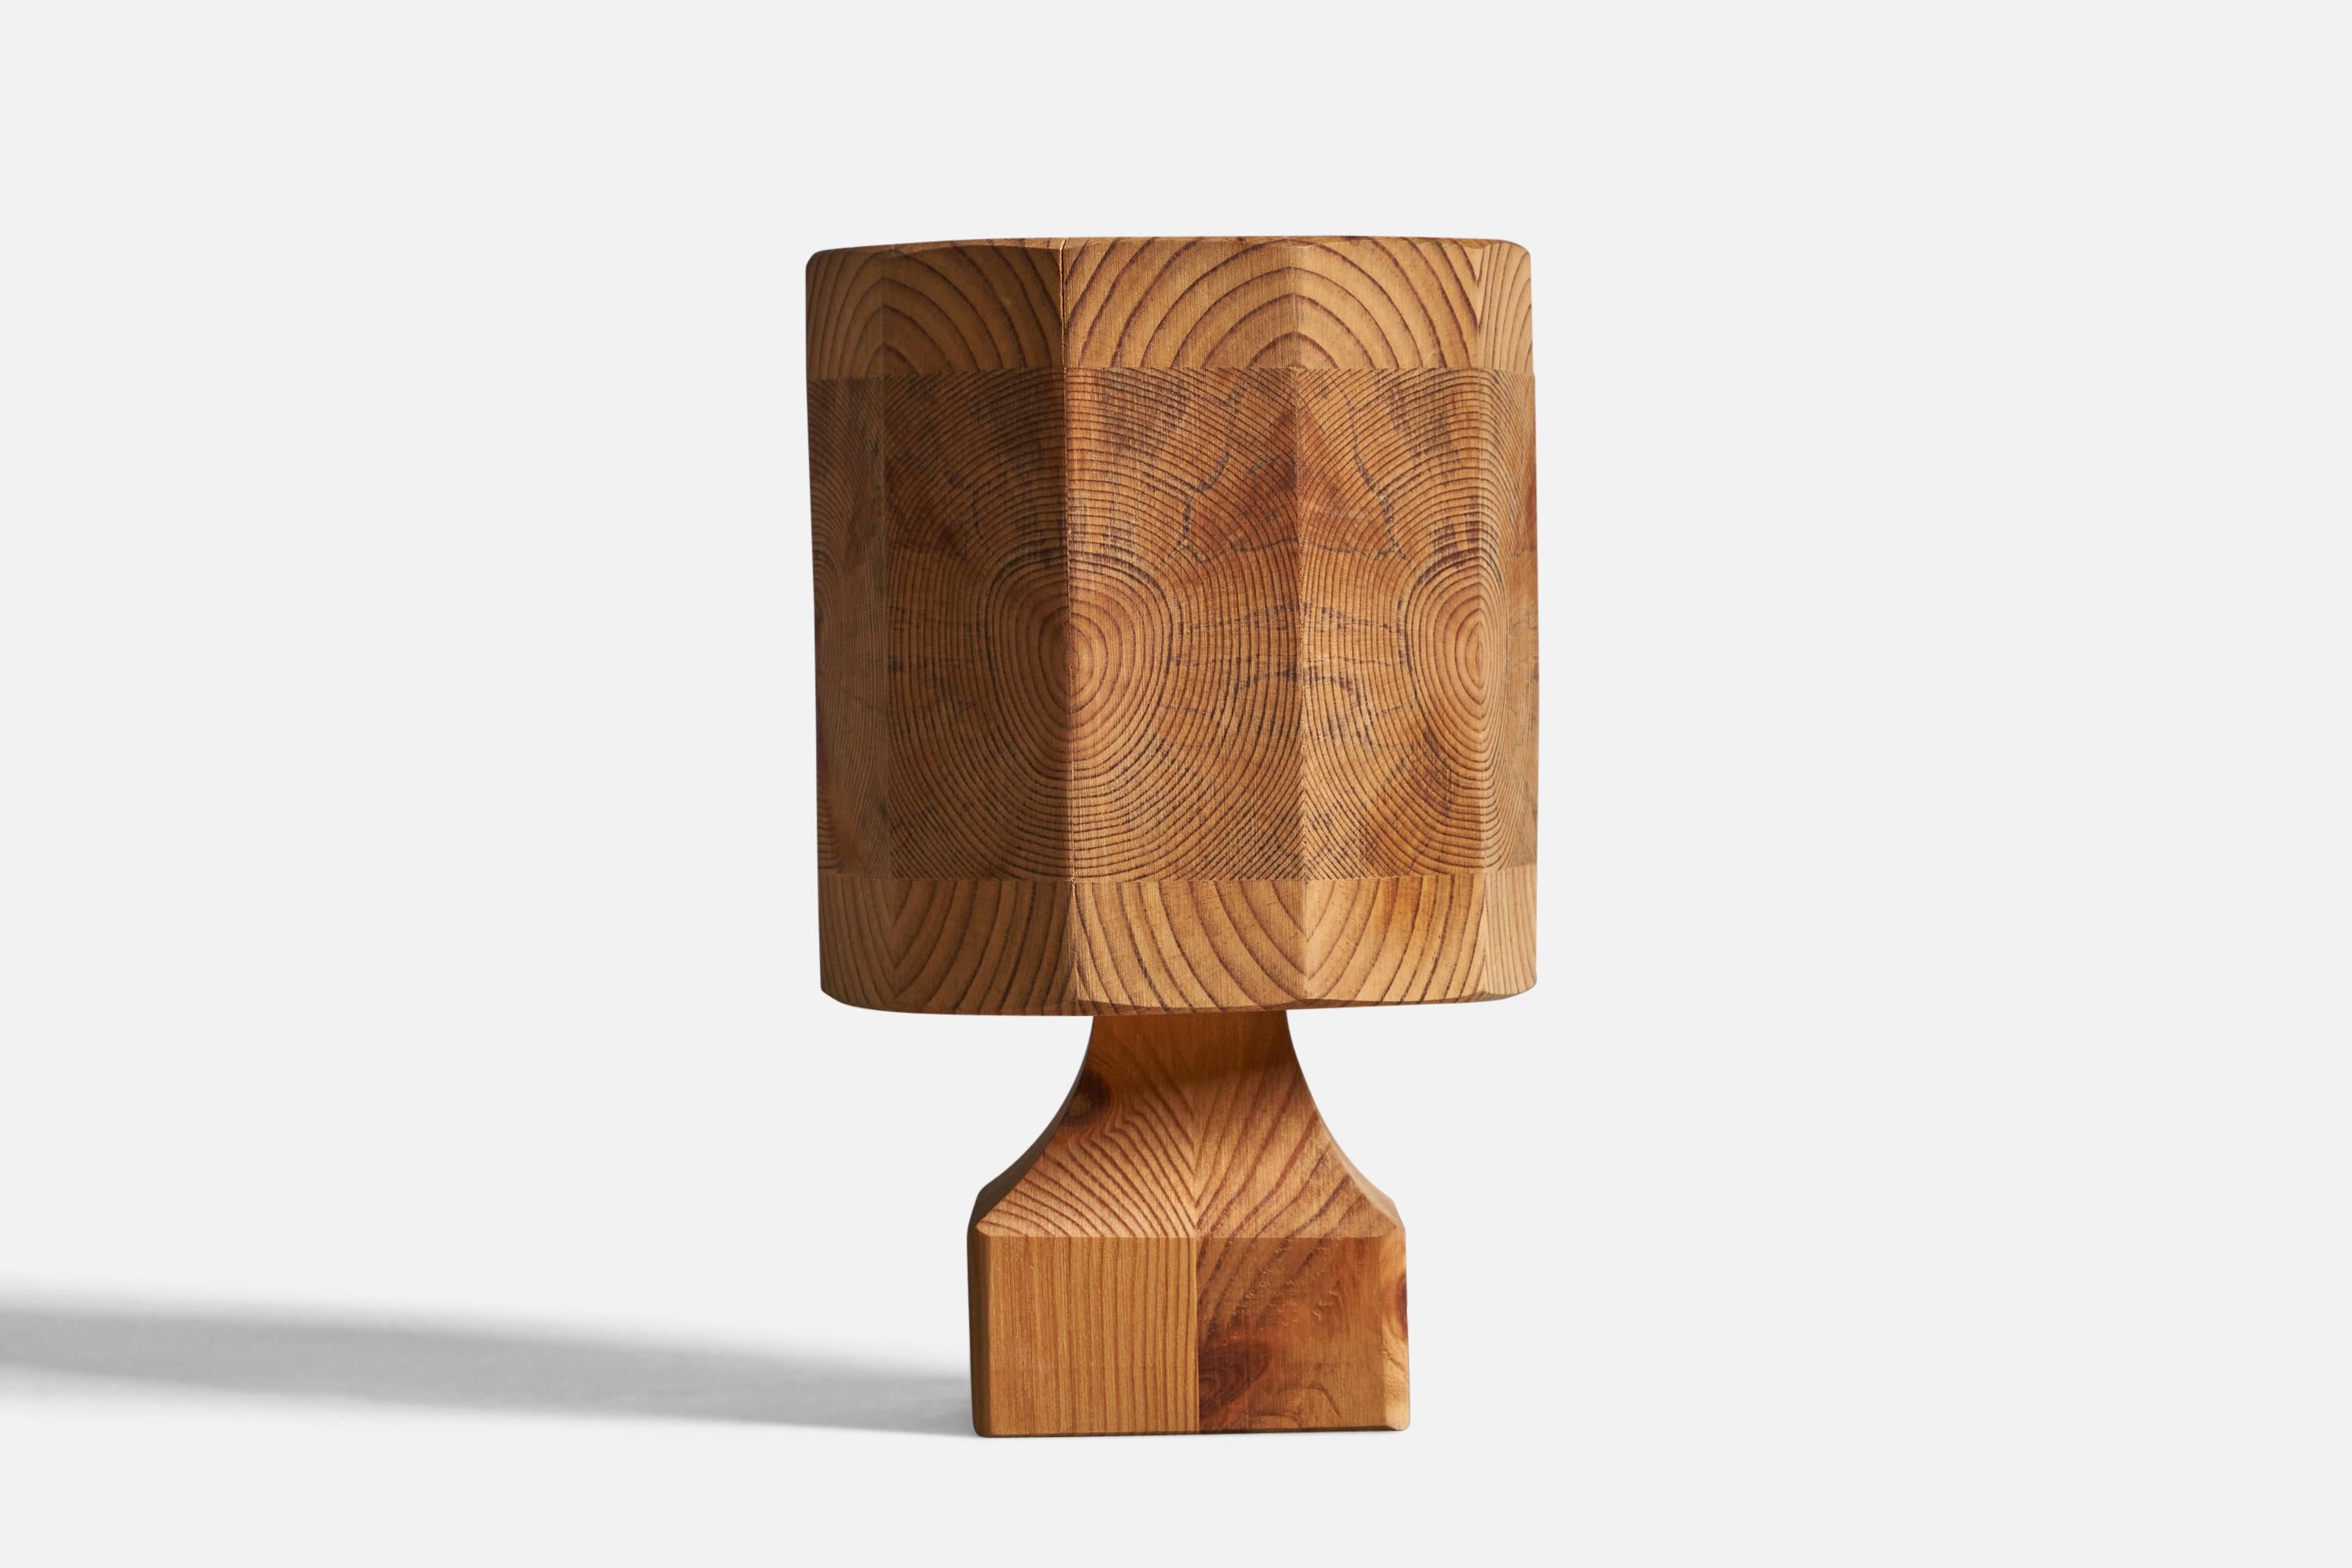 Lampe de table en pin conçue et produite en Suède, années 1970.

Dimensions globales (pouces) : 8.25